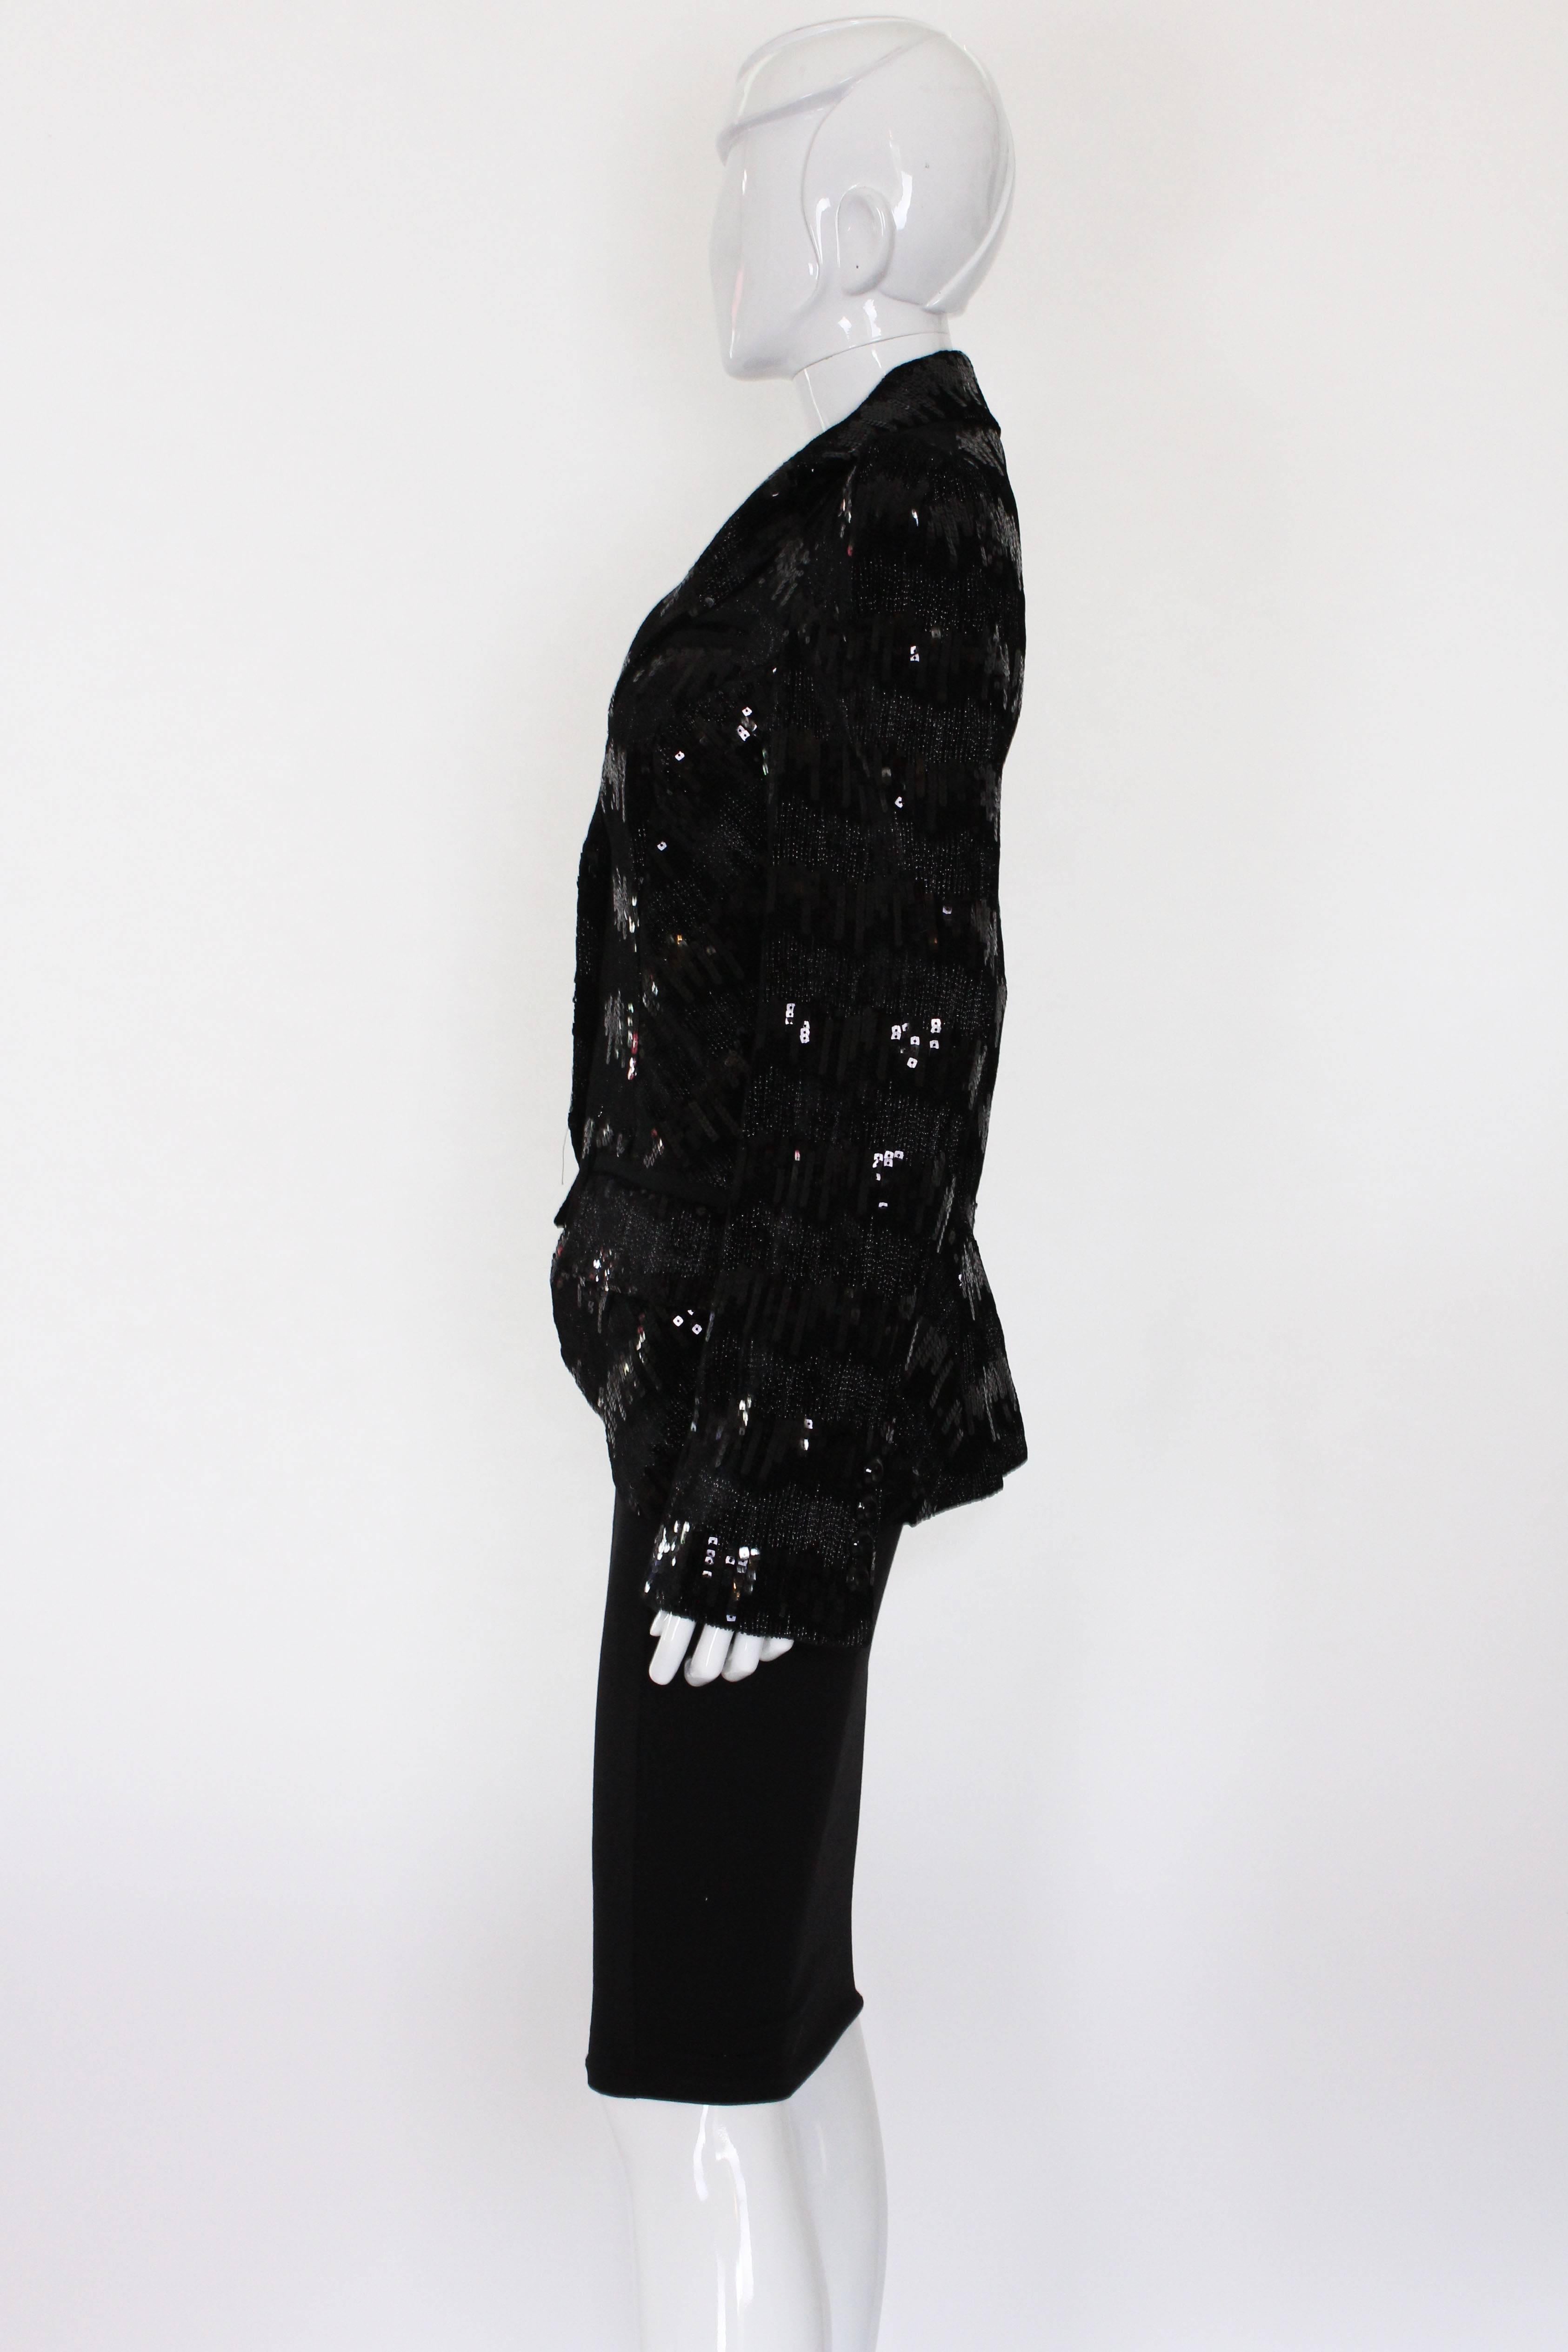 Women's Mid 2000s Black Sequin Diane von Furstenerg Jacket